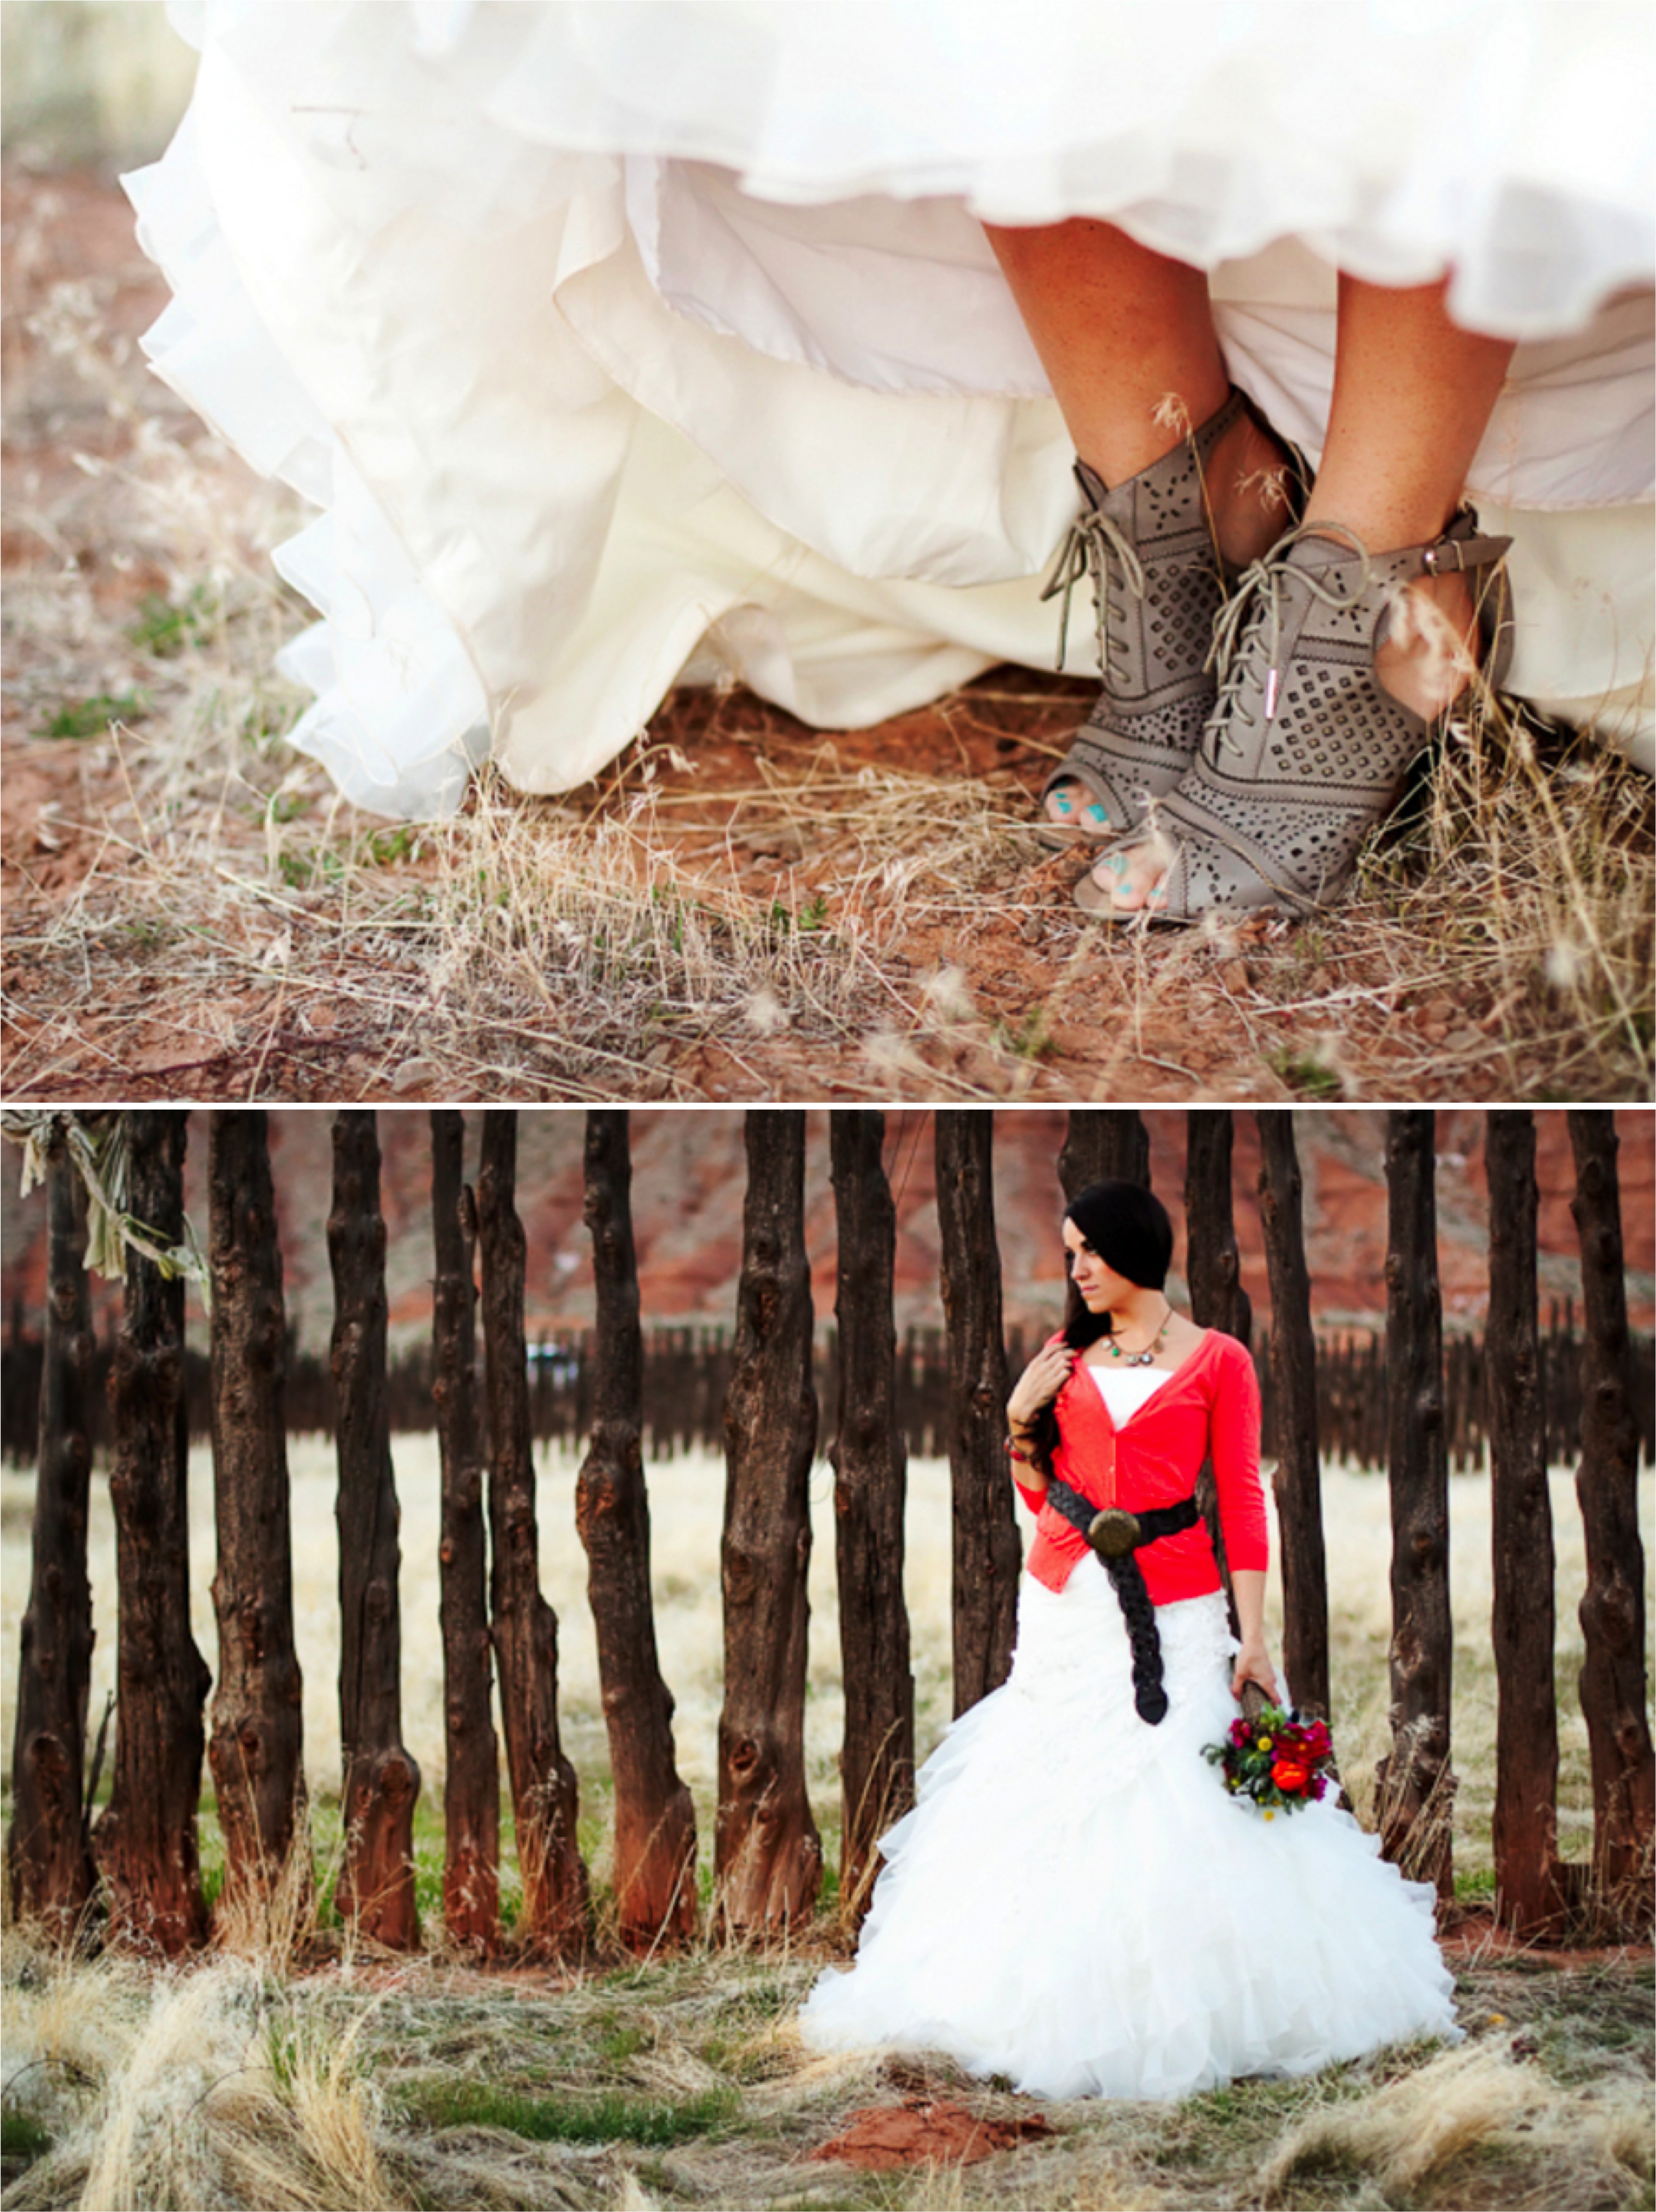 Boho Chic & Natural Wedding Inspiration via TheELD.com